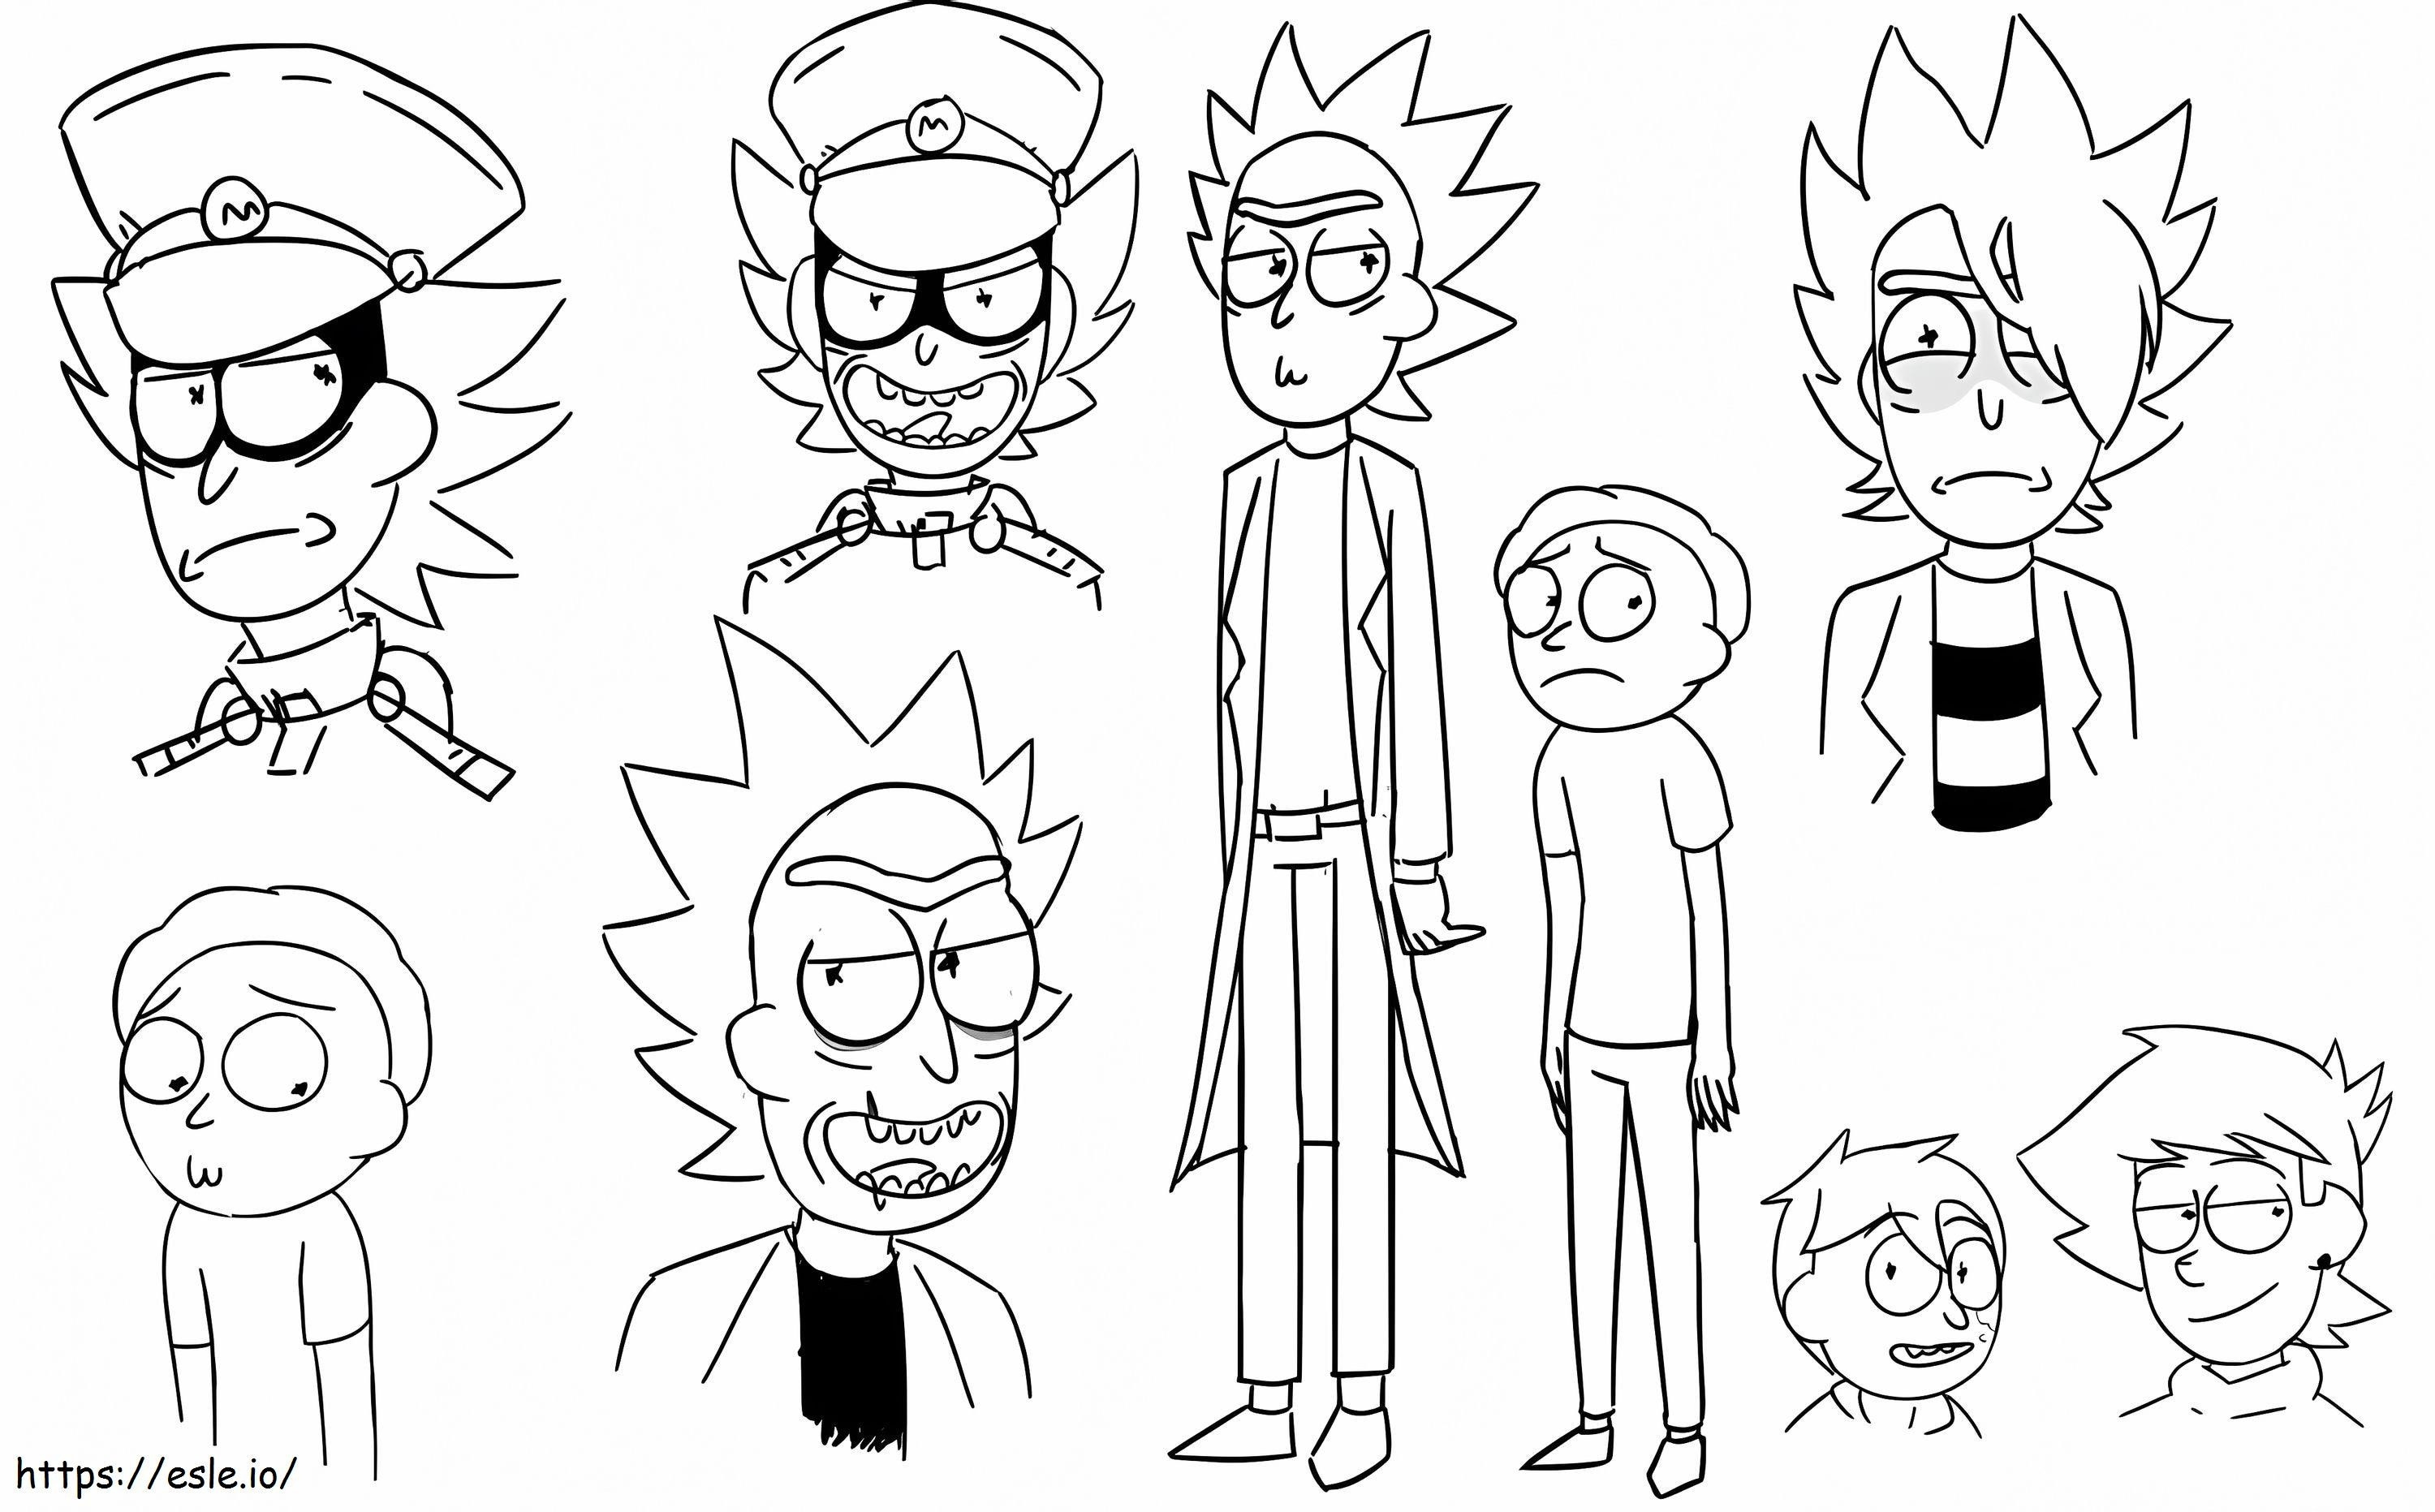 Rick és Morty karakterek kifestő